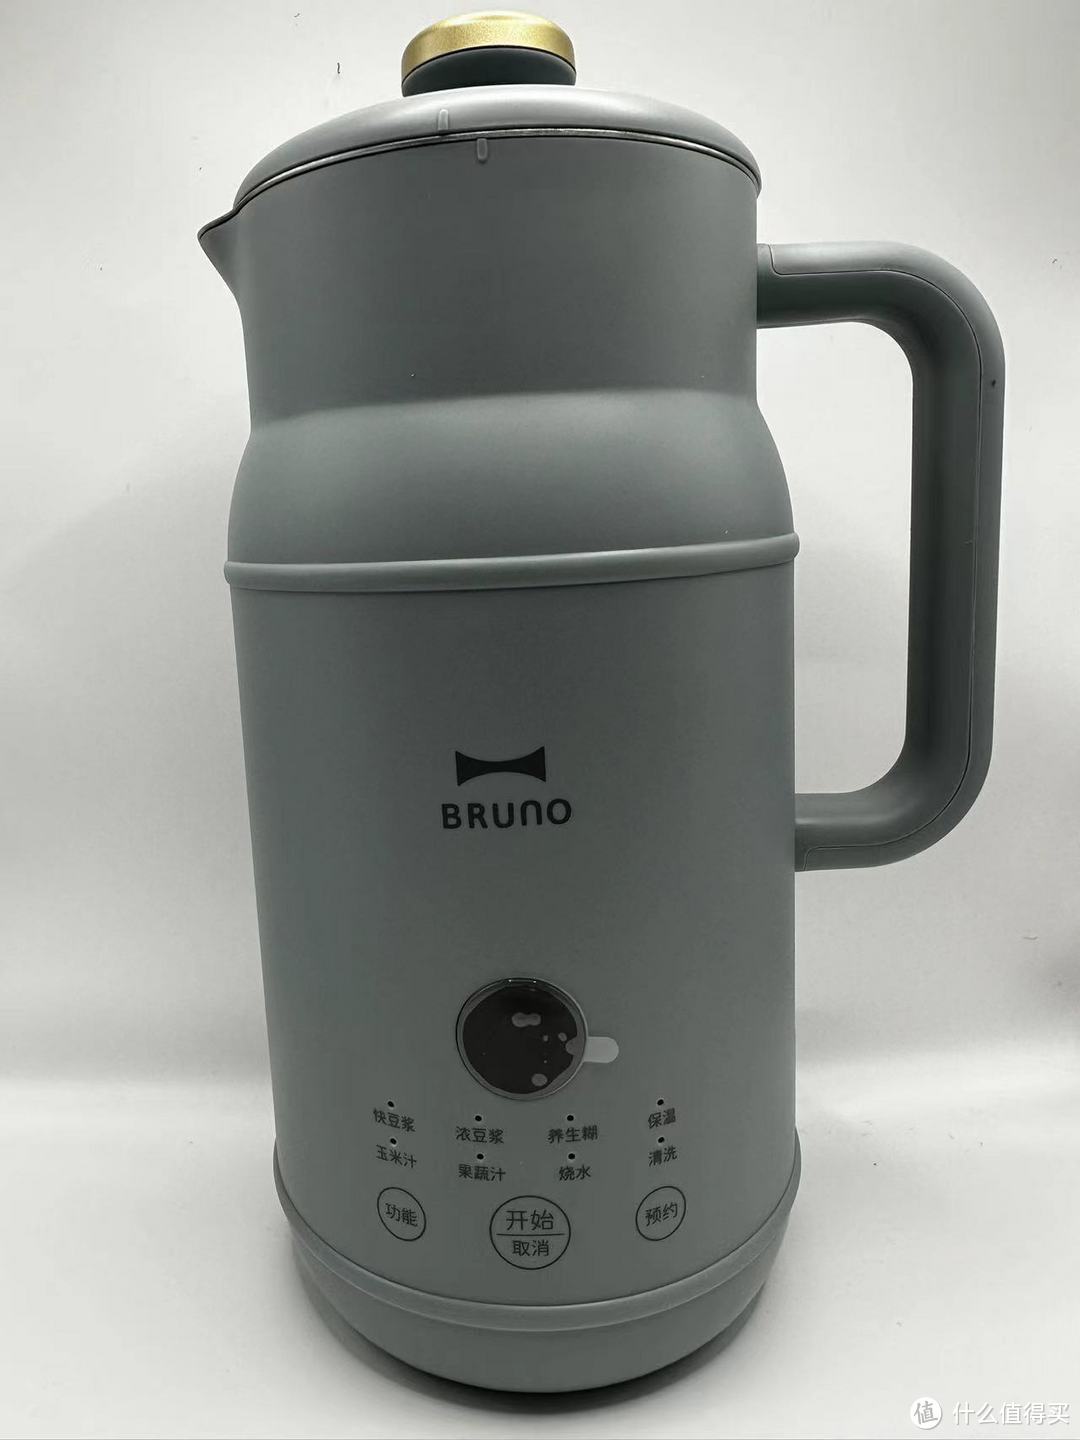 太棒了!BRUNO 小奶壶豆浆机，轻松制作香浓豆浆，让你的生活更加美好!